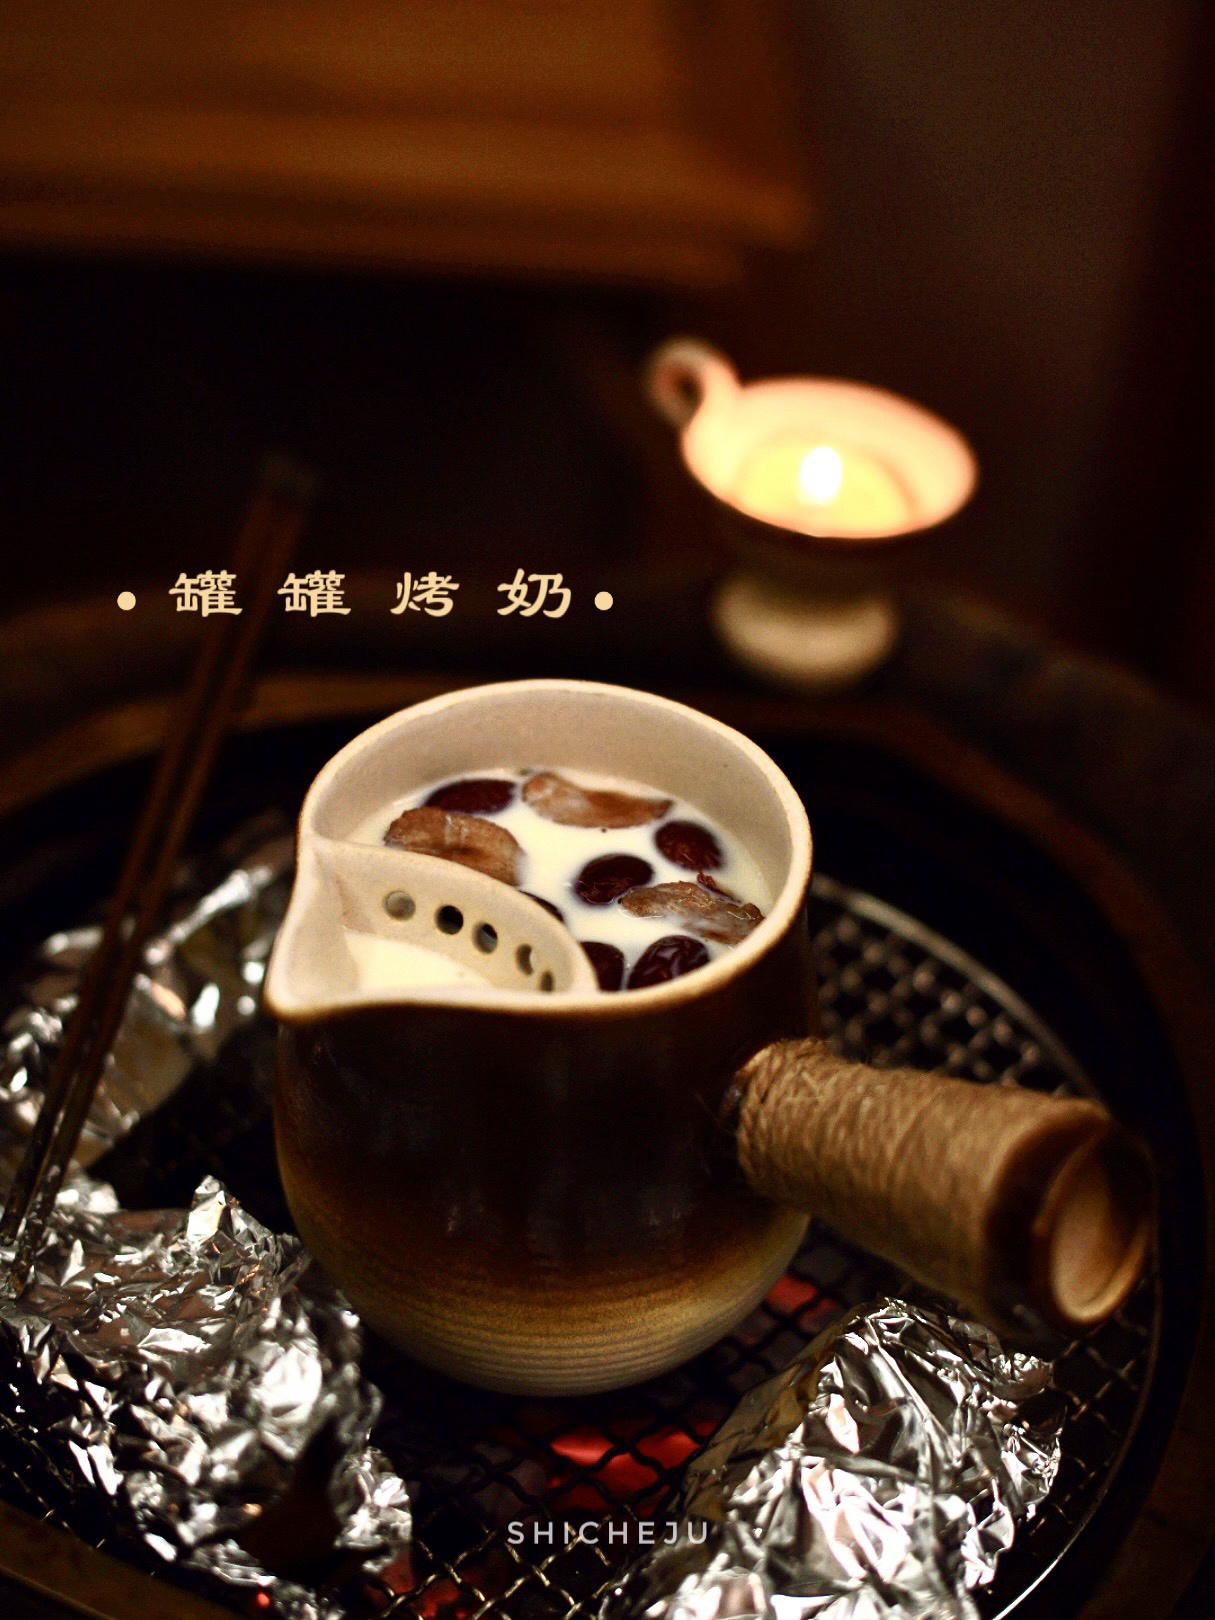 围炉可以煮茶 也可以做罐罐烤奶-红枣桂圆红茶烤奶